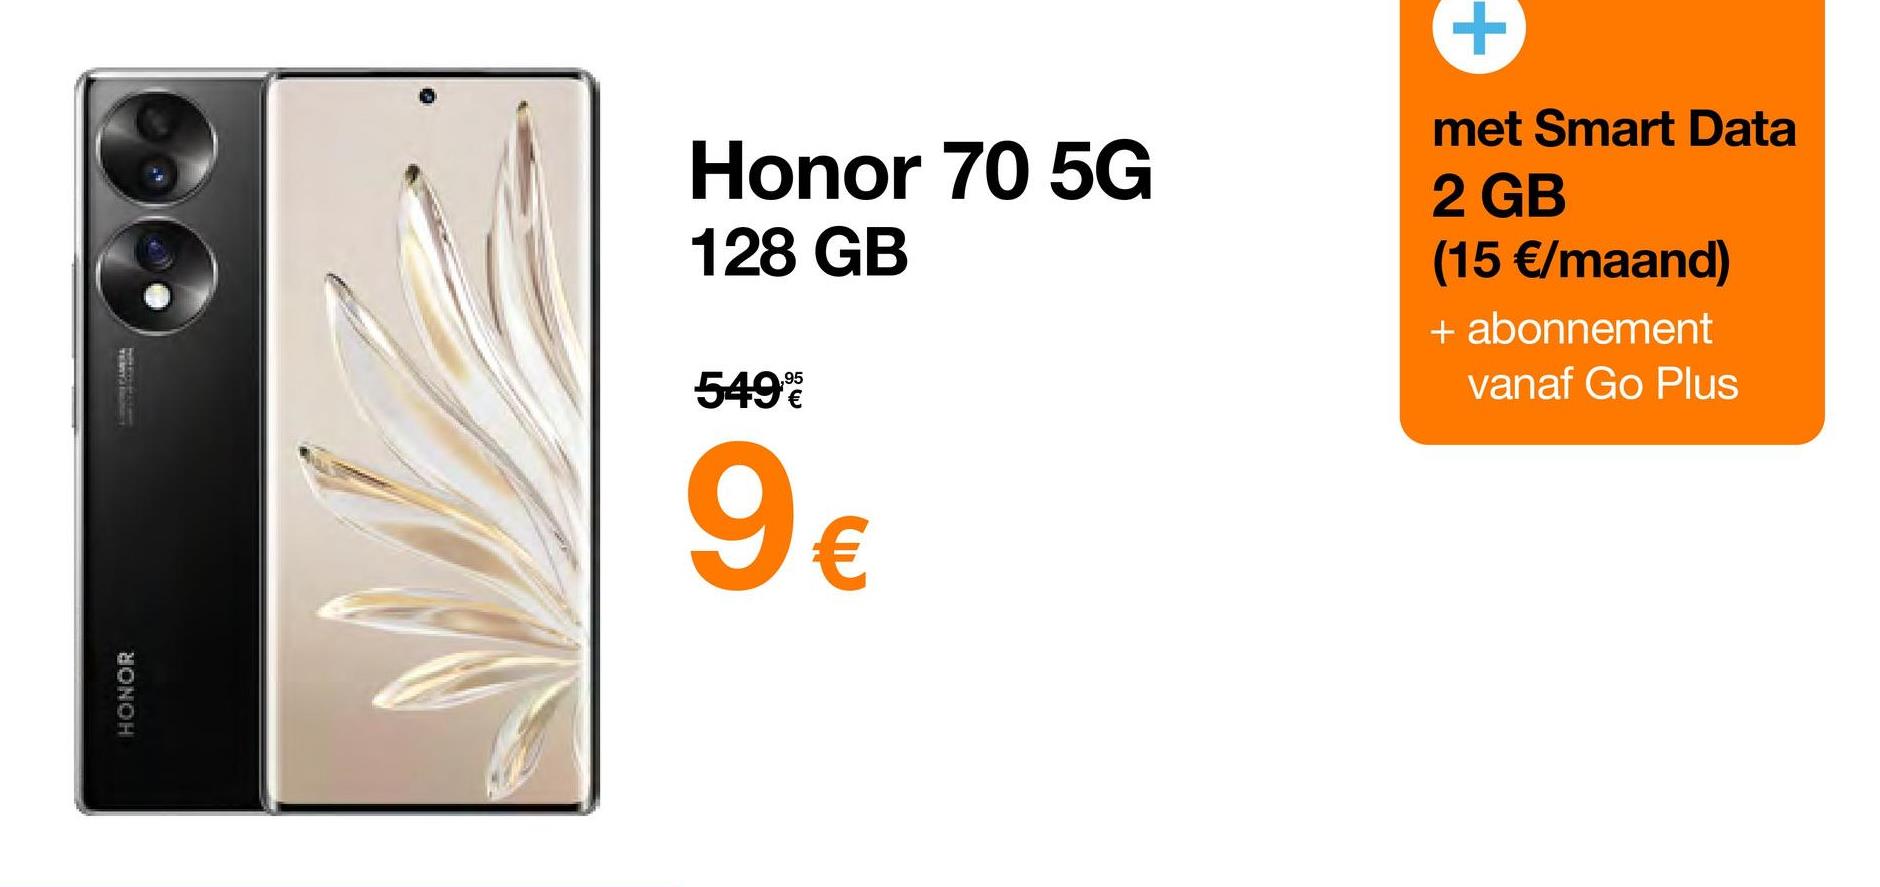 BONOH
Honor 70 5G
128 GB
549%
9€
met Smart Data
2 GB
(15 €/maand)
+ abonnement
vanaf Go Plus